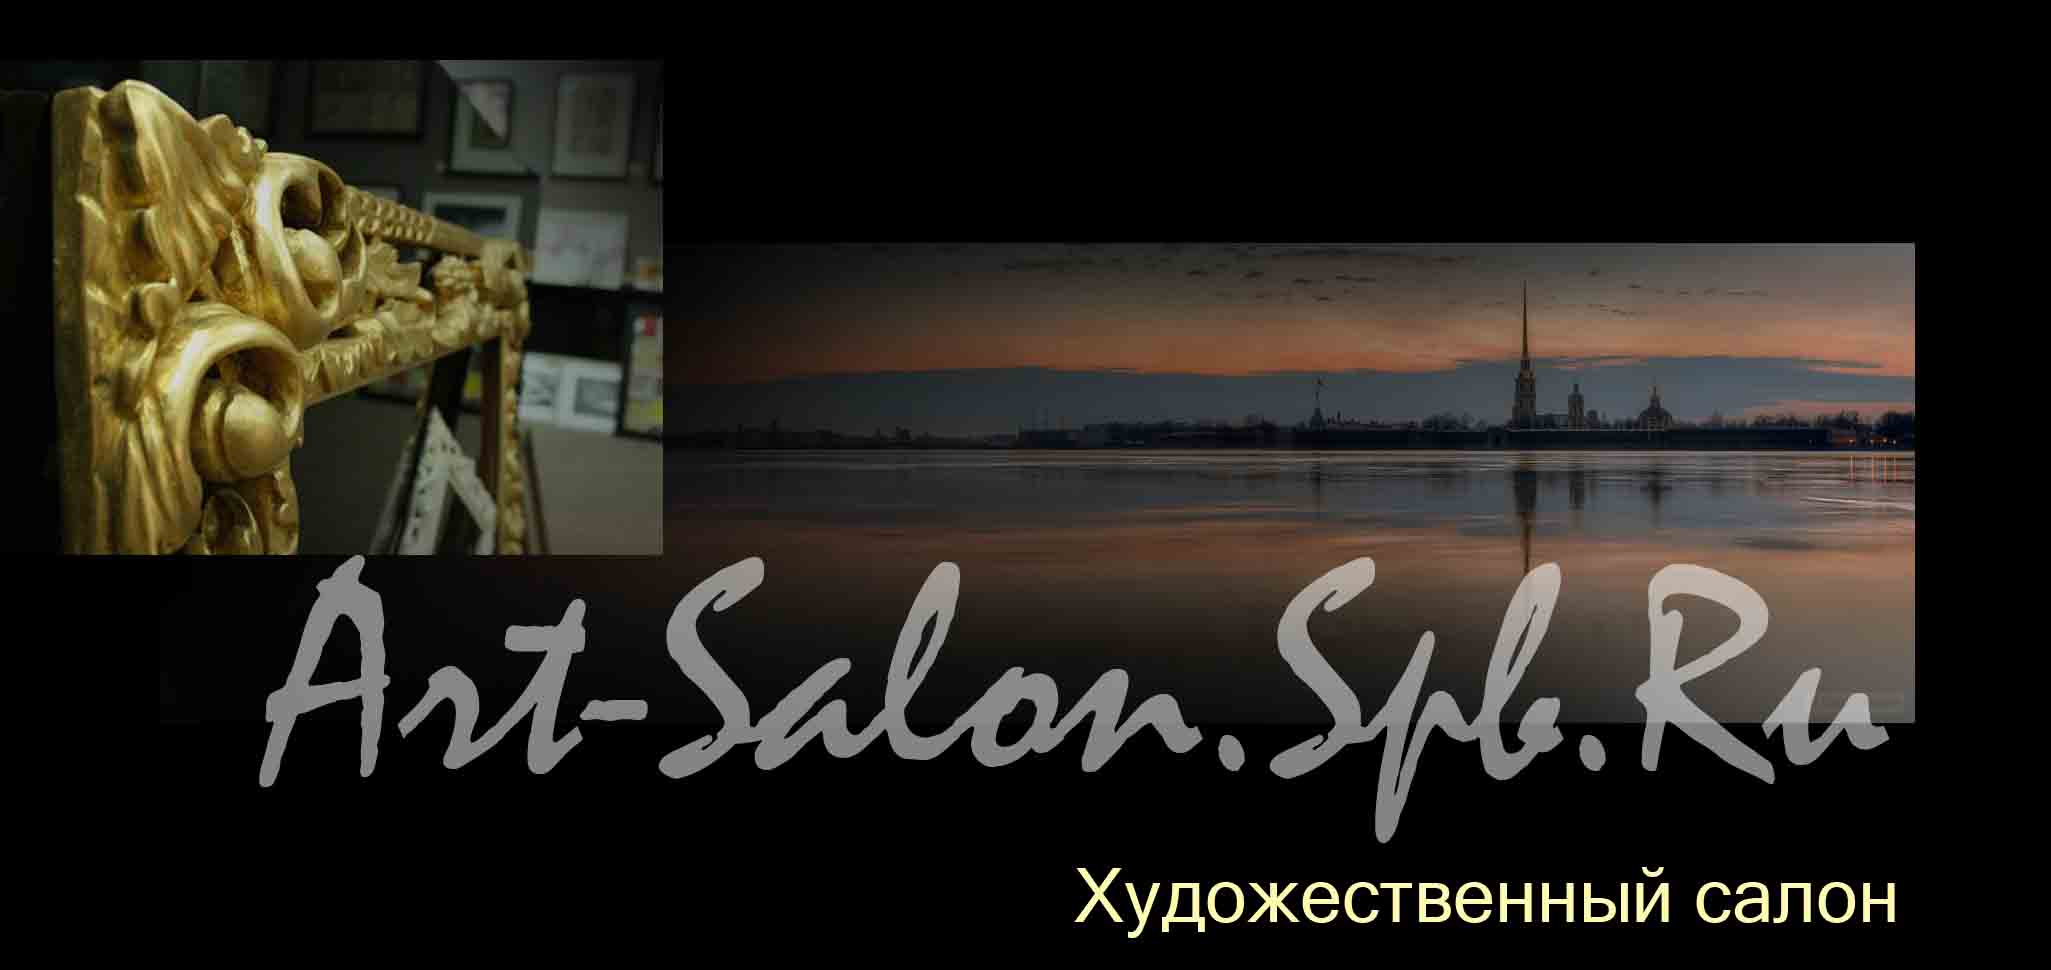 Art-Salon.Spb.Ru